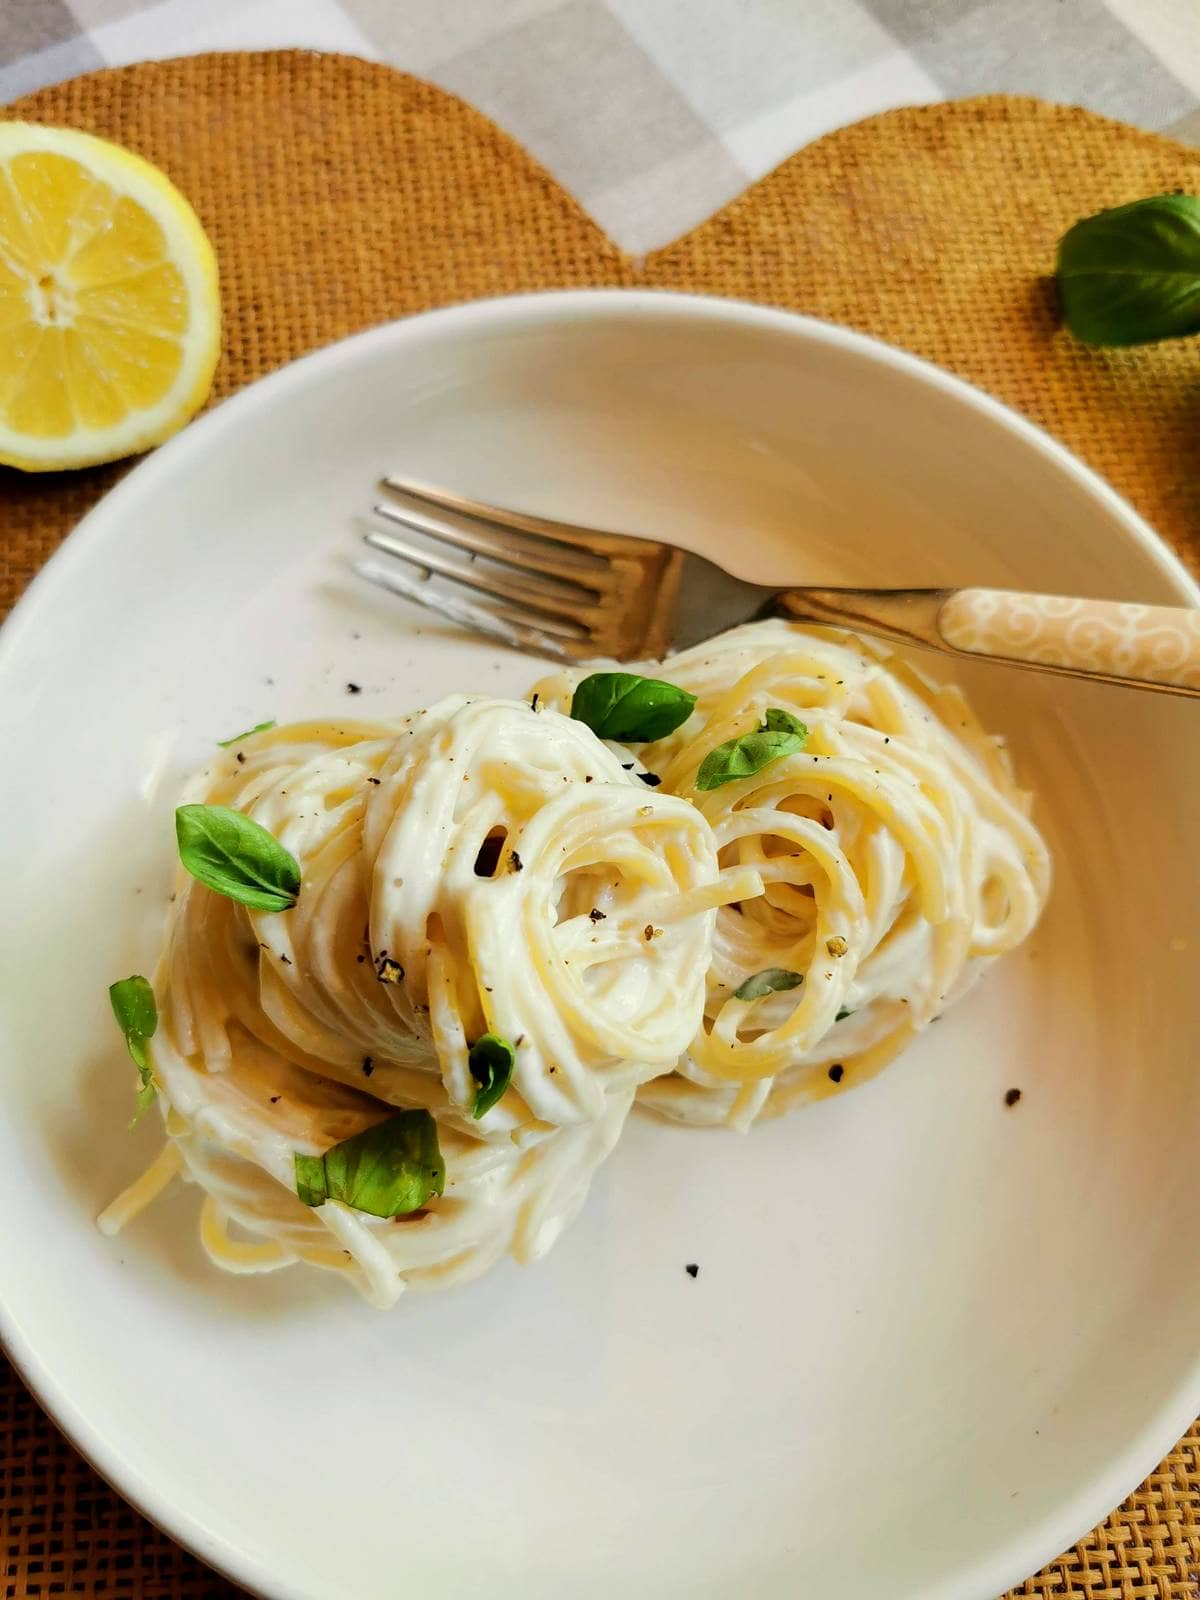 Italian spaghetti al limone with ricotta, basil and lemon